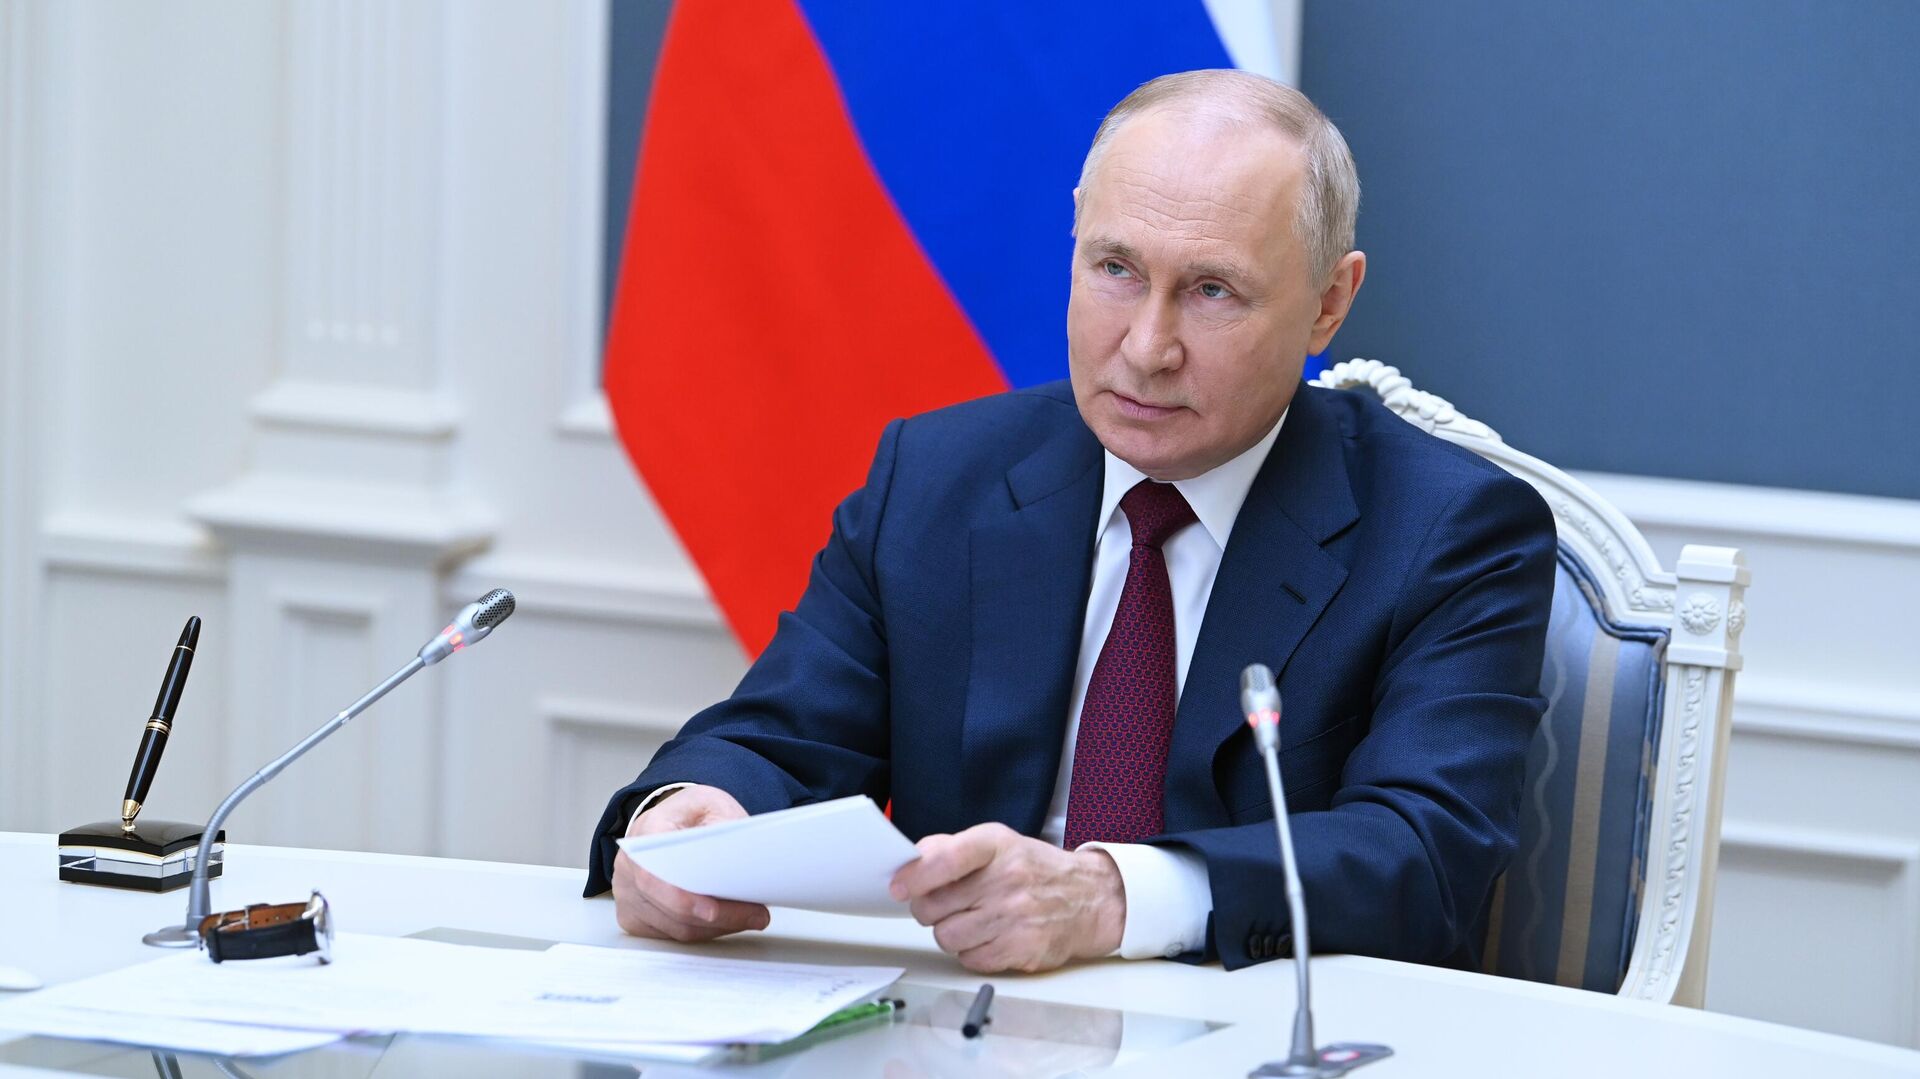 Владимир Путин: ОХУ барууны ноёрхлыг үгүйсгэх шинэ ертөнцийг бий болгохыг зорьж байна